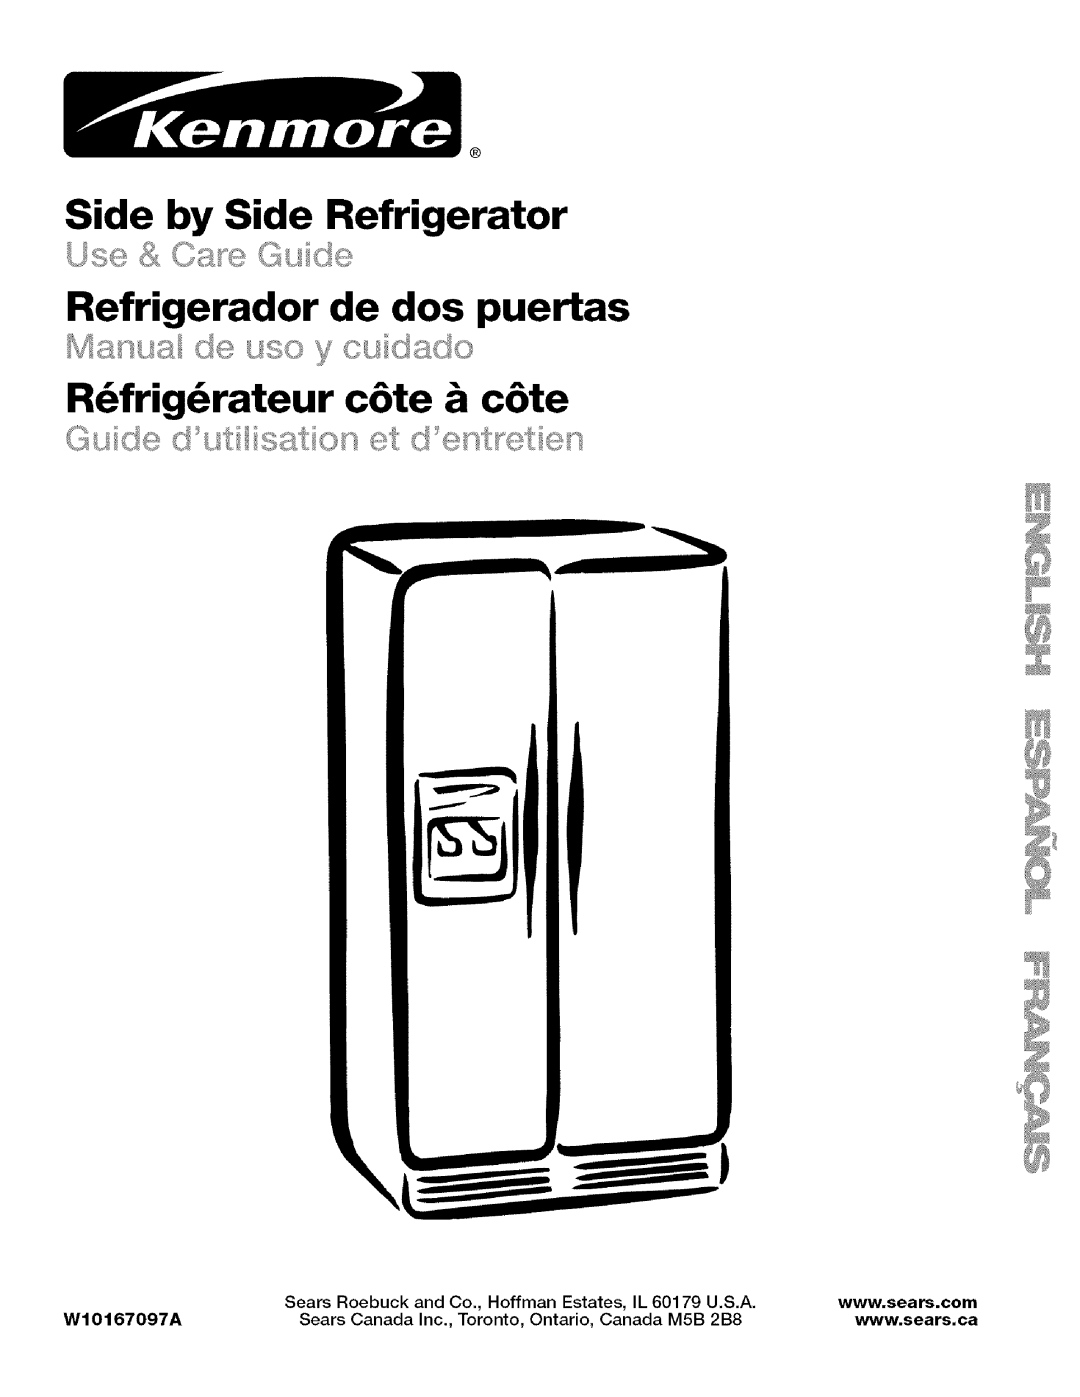 Kenmore WIOI67097A manual Side by Side Refrigerator, Refrigerador de dos puertas, R_frig_rateur c6te & c6te, Sears Roebuck 